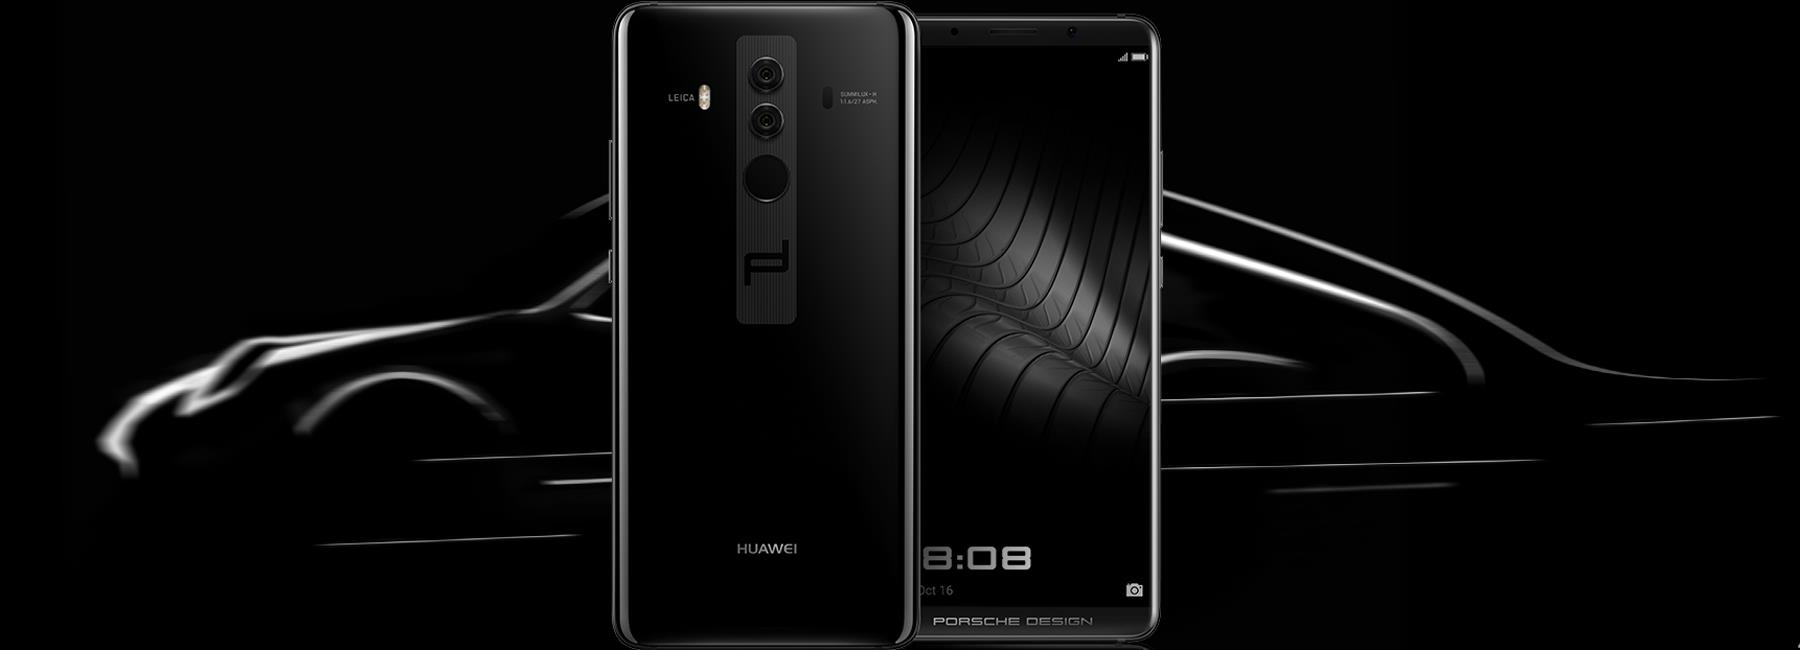 مميزات وعيوب هاتف Huawei Mate 10 Porsche Design